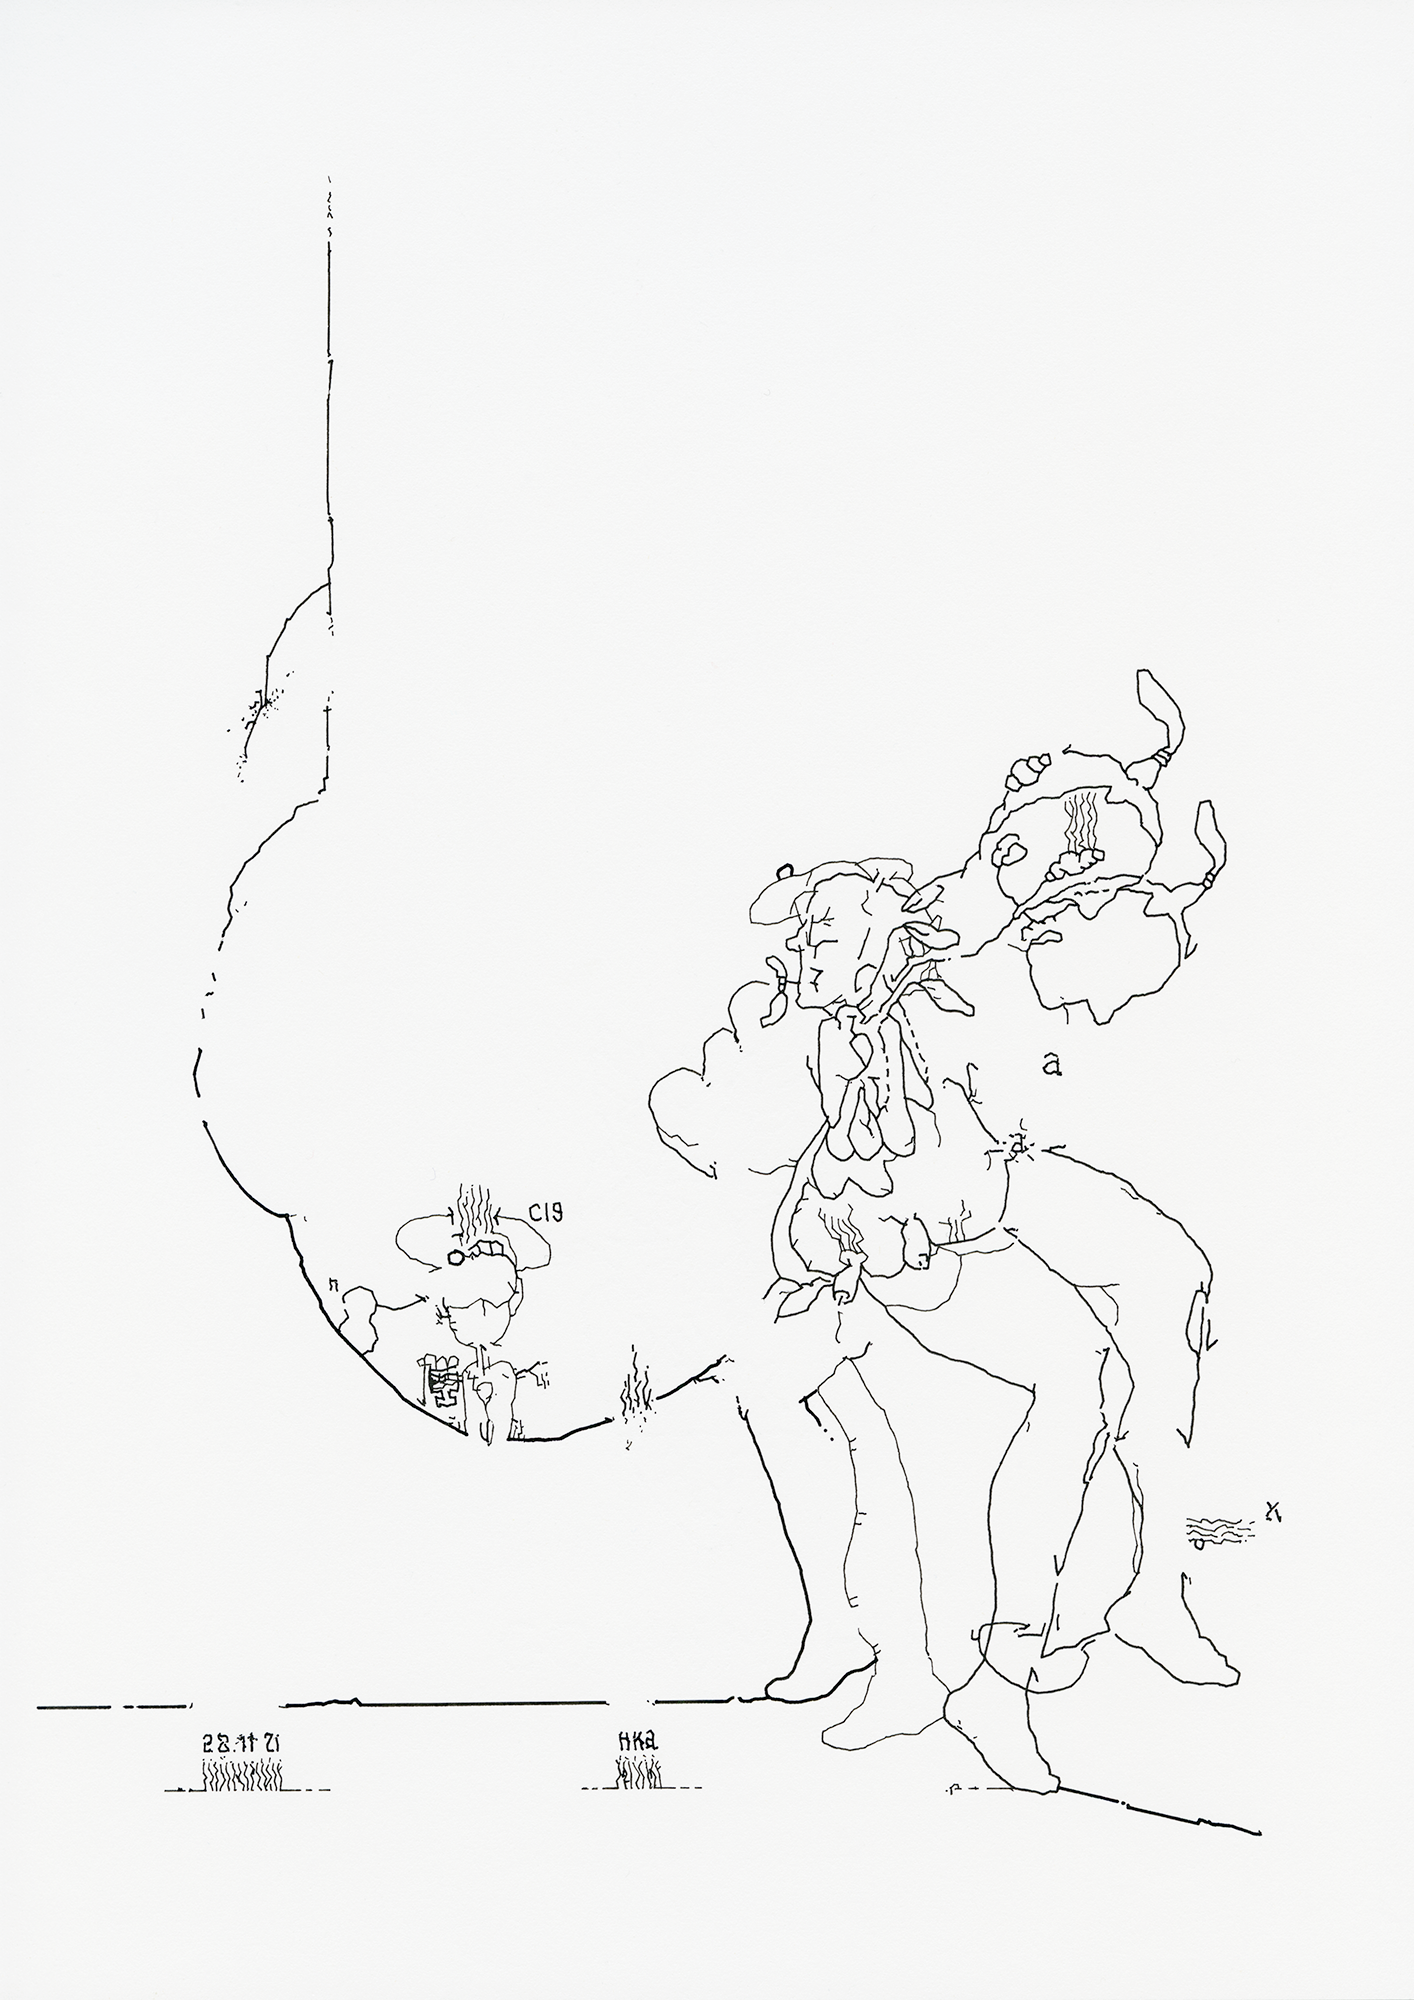 Hannes Kater: Tageszeichnung (Zeichnung/drawing) vom 28.11.2021 (1414 x 2000 Pixel)